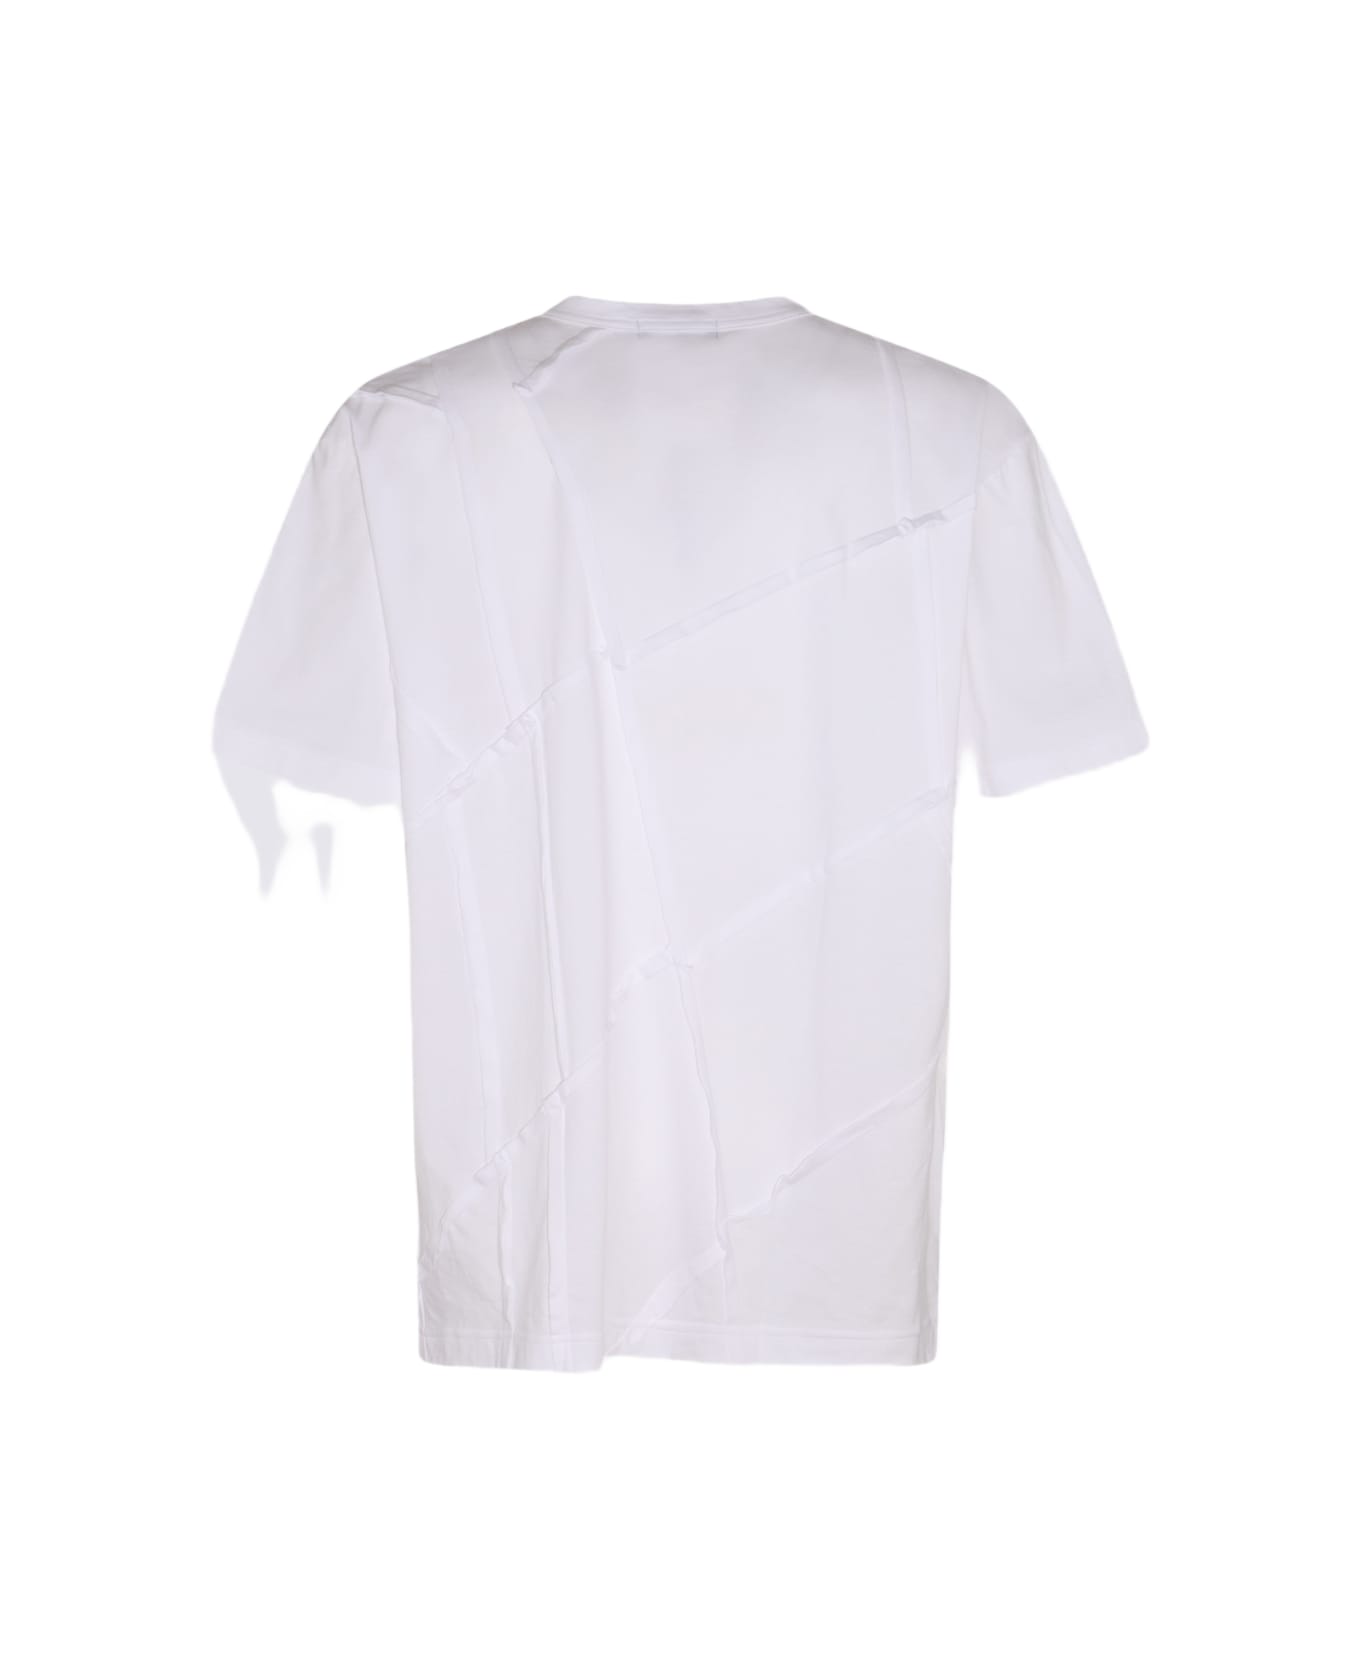 Comme Des Garçons Homme Plus White Cotton T-shirt - White